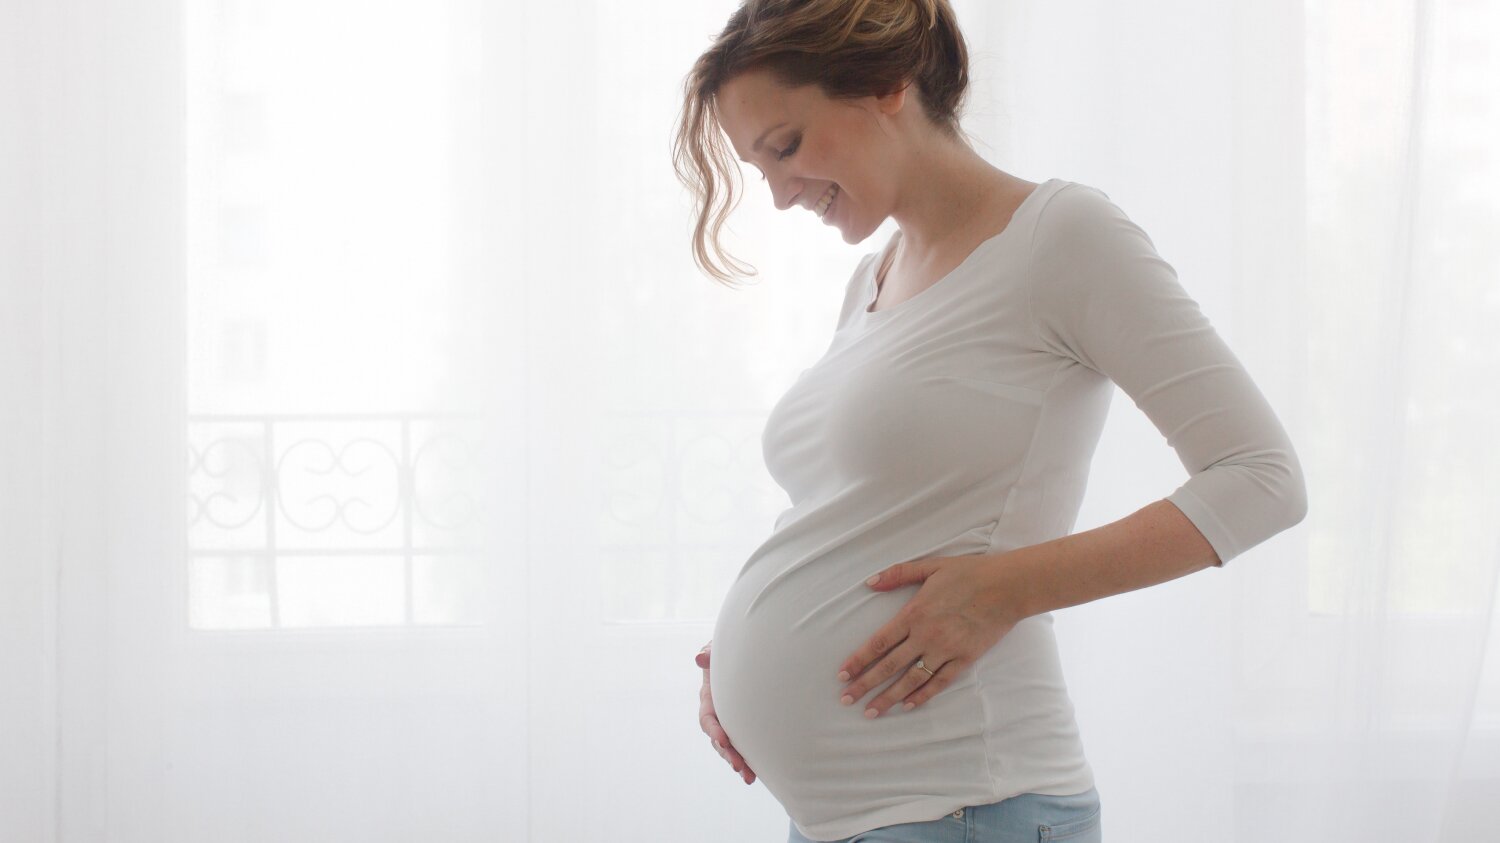 Беременность и потеря зрения: 5 мифов о незрячих мамах